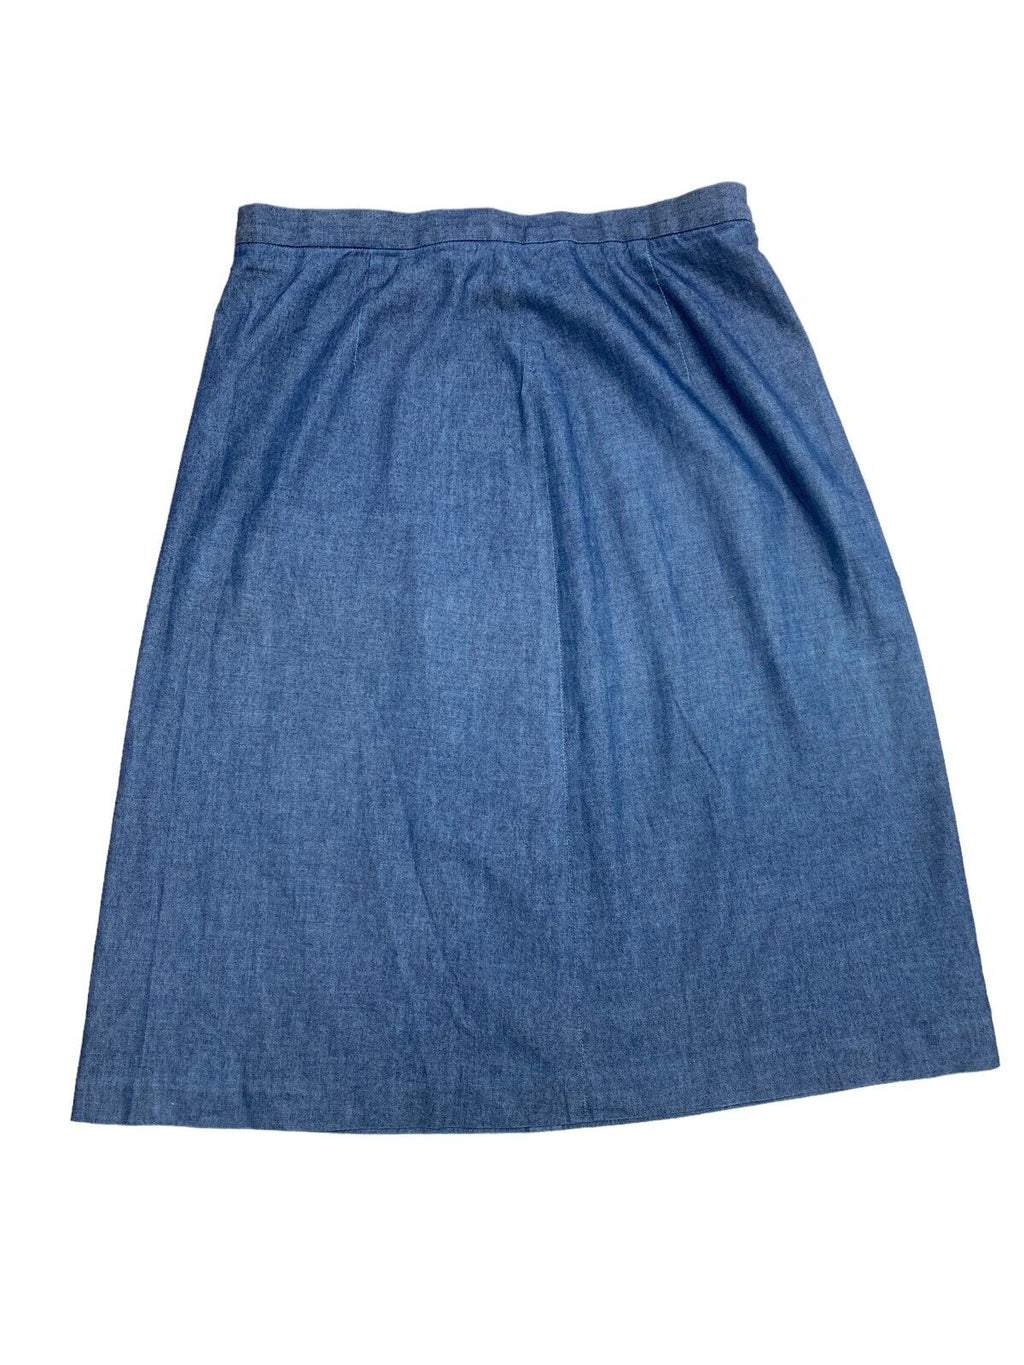 Blue denim skirt